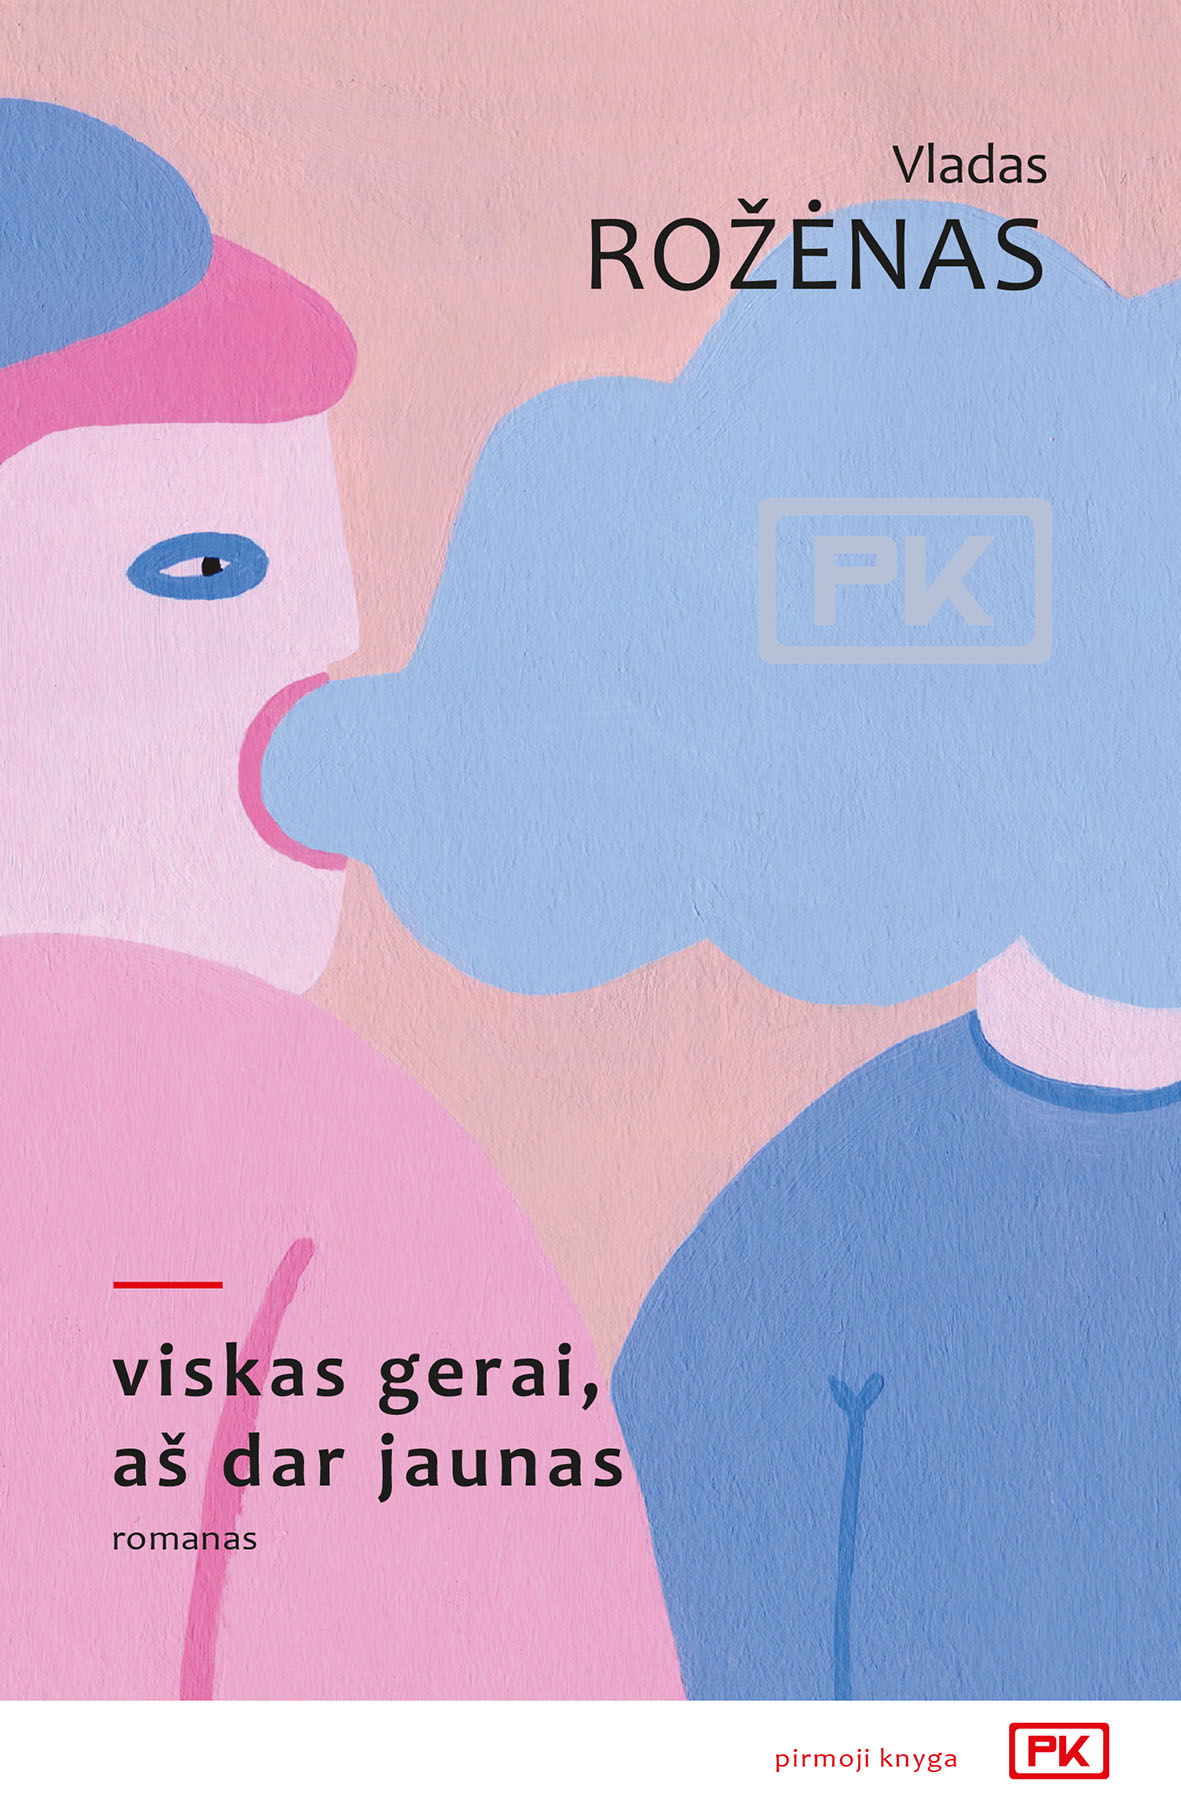 Vladas Rožėnas. „Viskas gerai, aš dar jaunas“. Dizainas Tomo S. Butkaus, viršelyje panaudotas Kissi Ussuki kūrinio fragmentas. – V: Lietuvos rašytojų sąjungos leidykla, 2019.